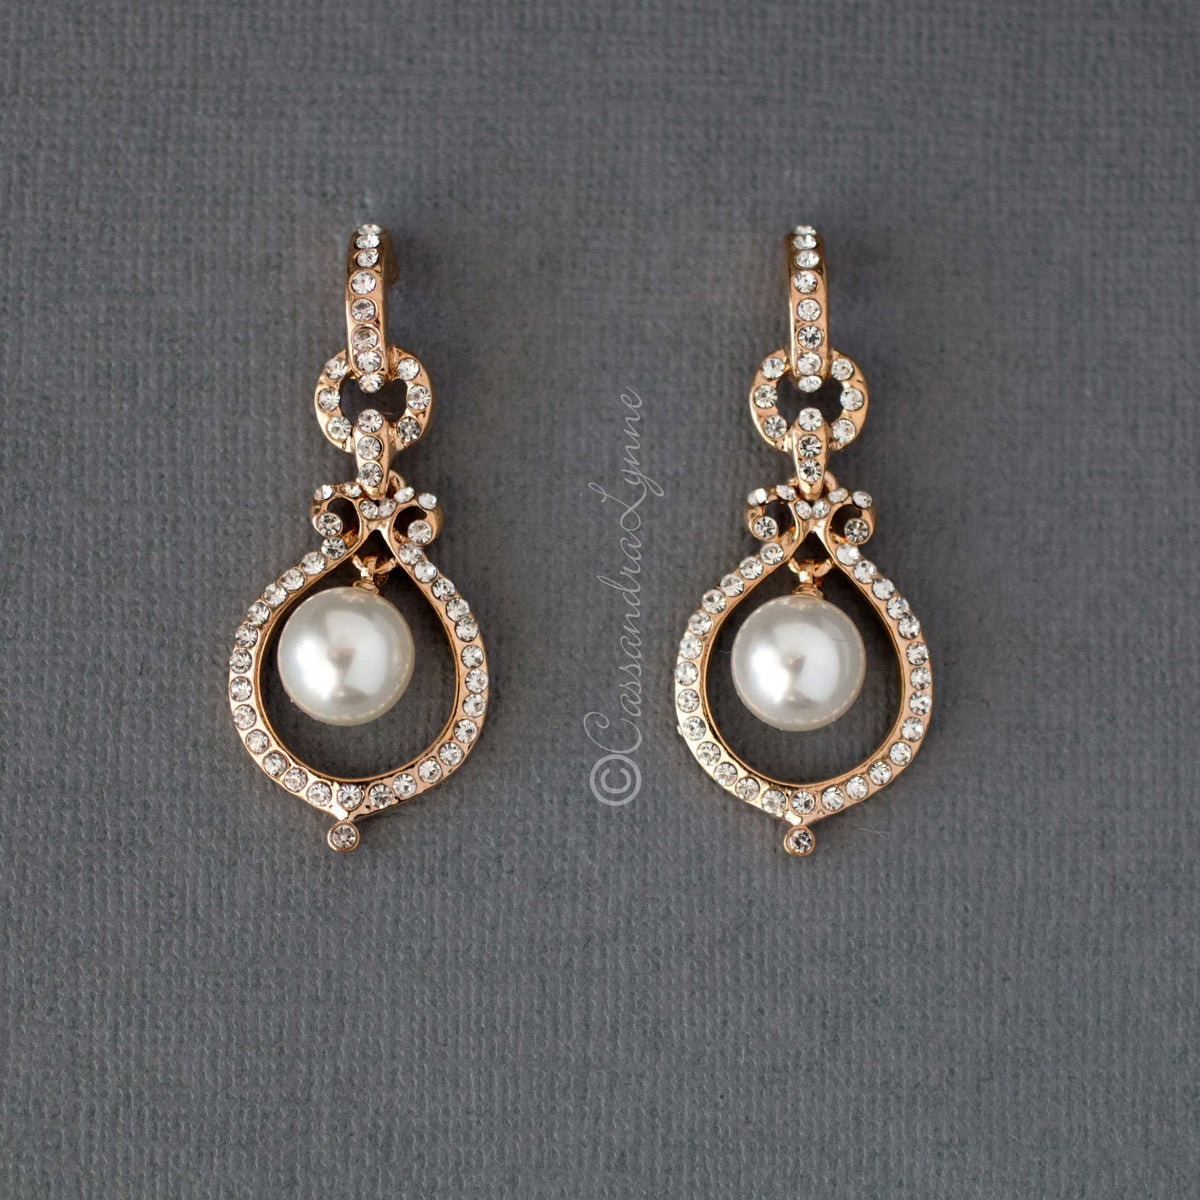 Crystal and Pearl Doorknocker Earrings